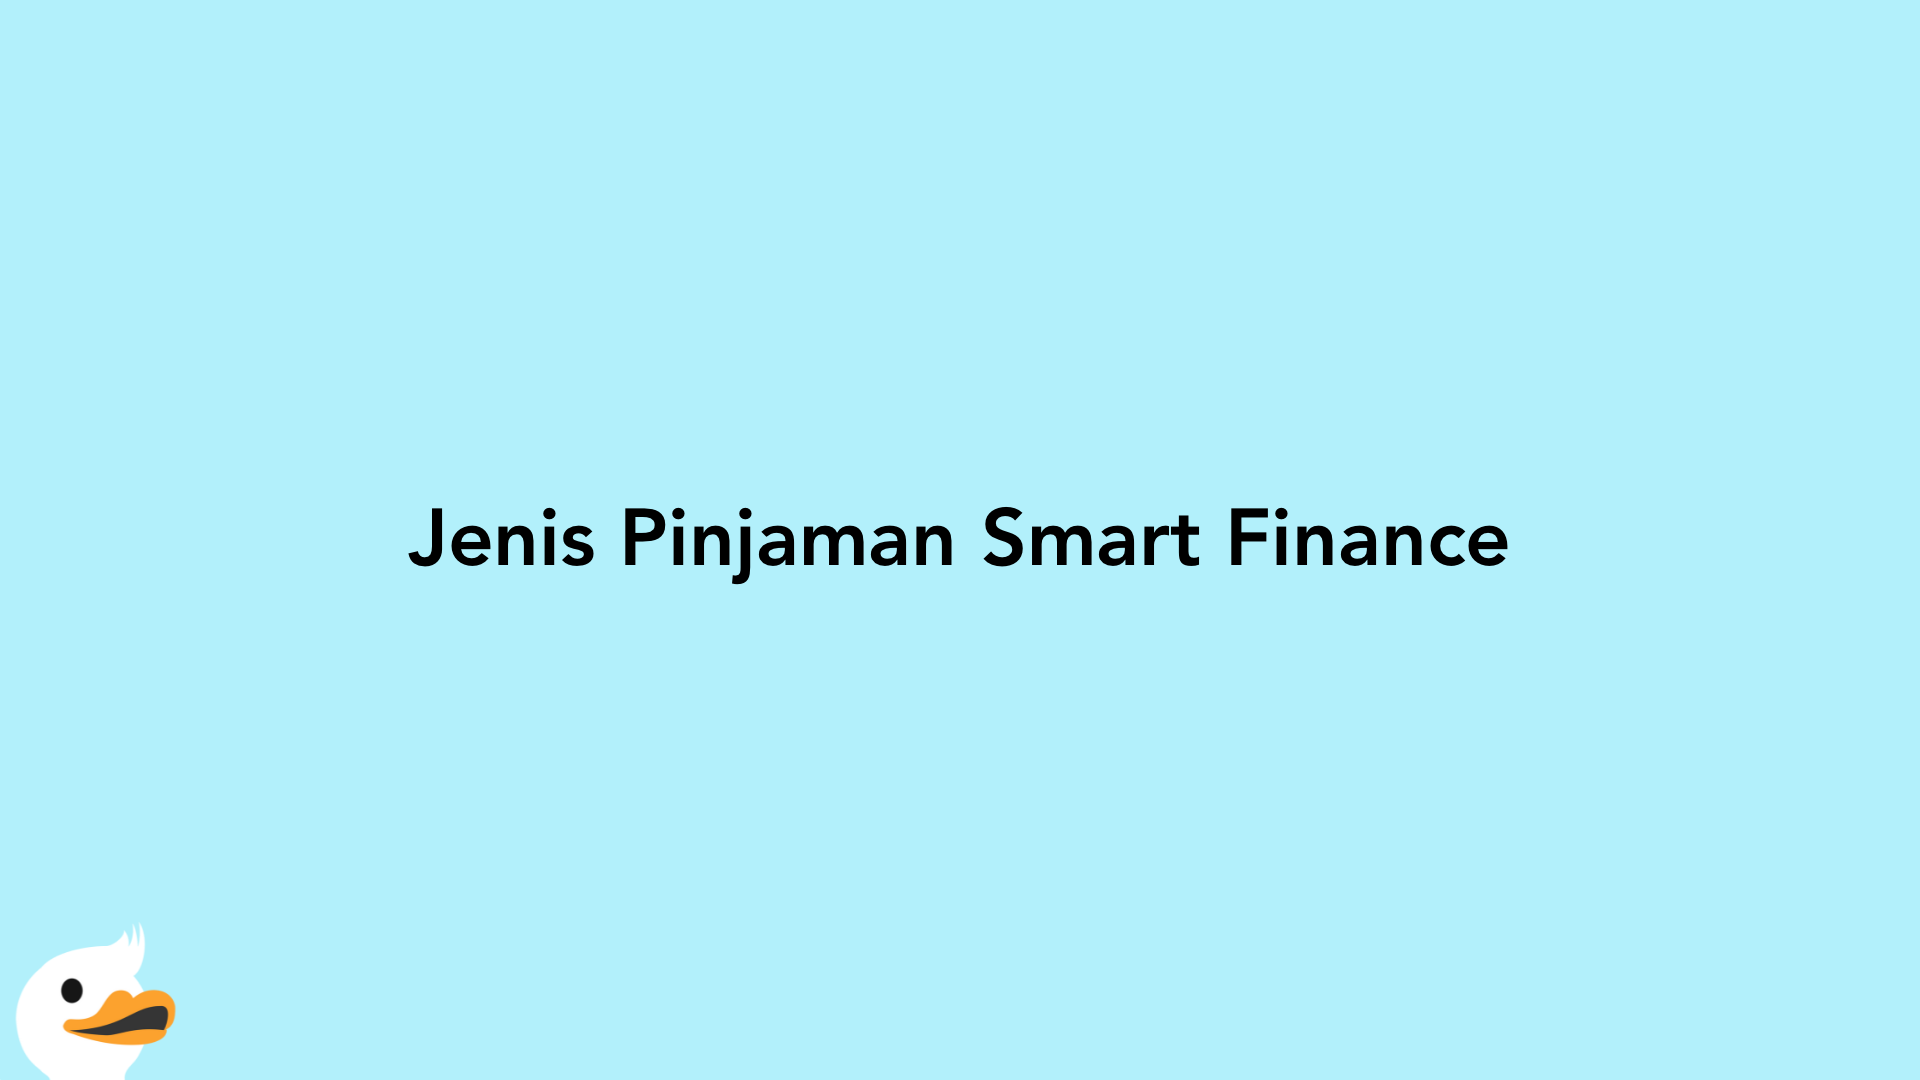 Jenis Pinjaman Smart Finance